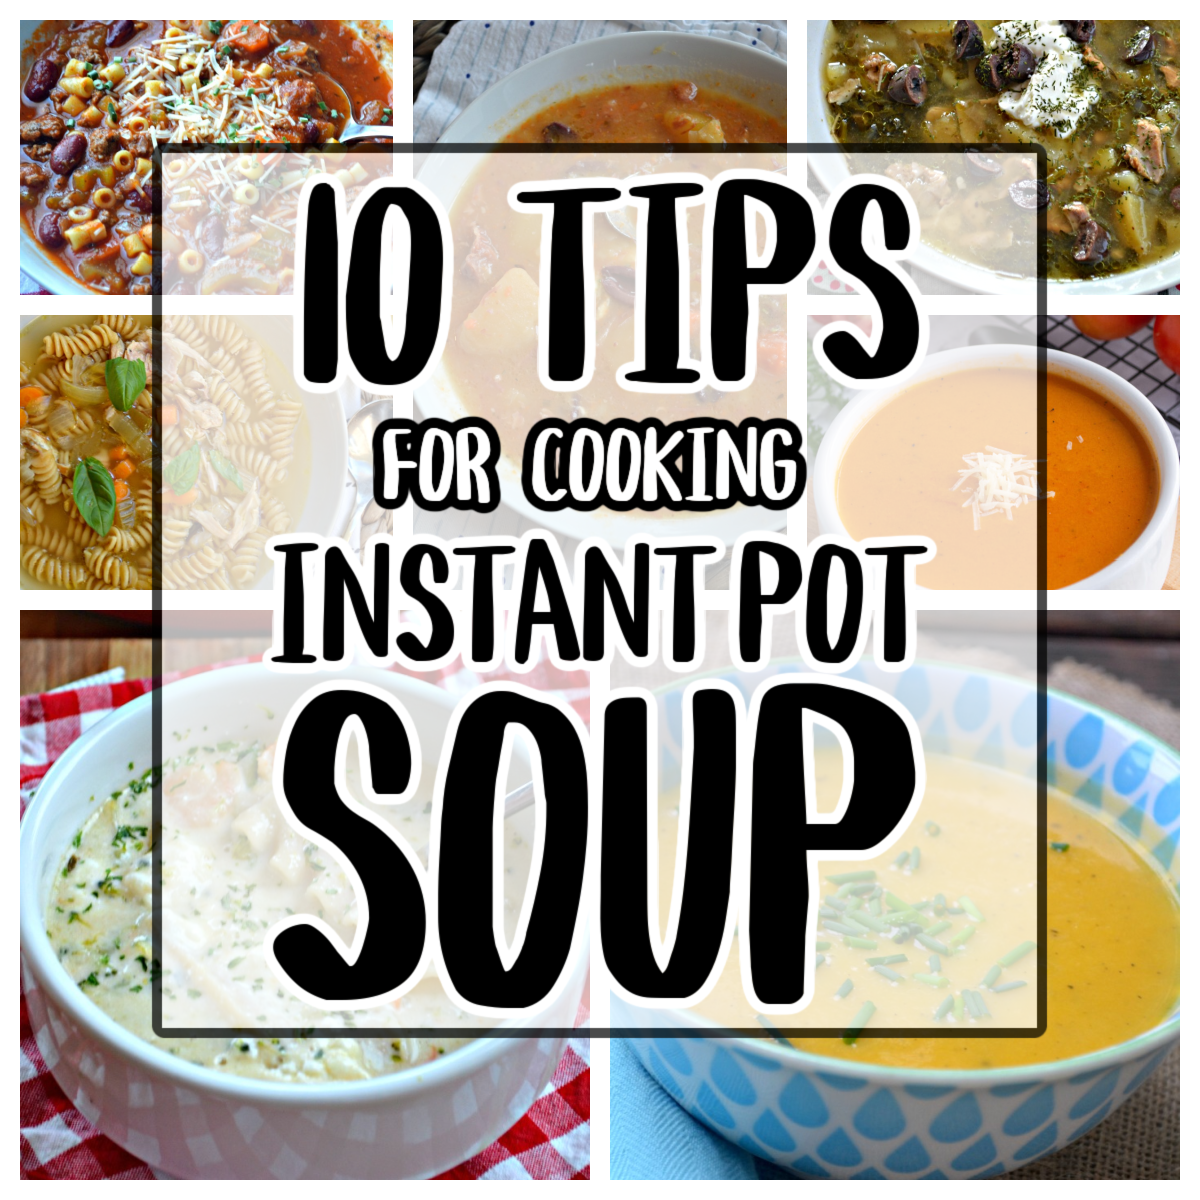 9 Easy Instant Pot Soups Go Go Go Gourmet